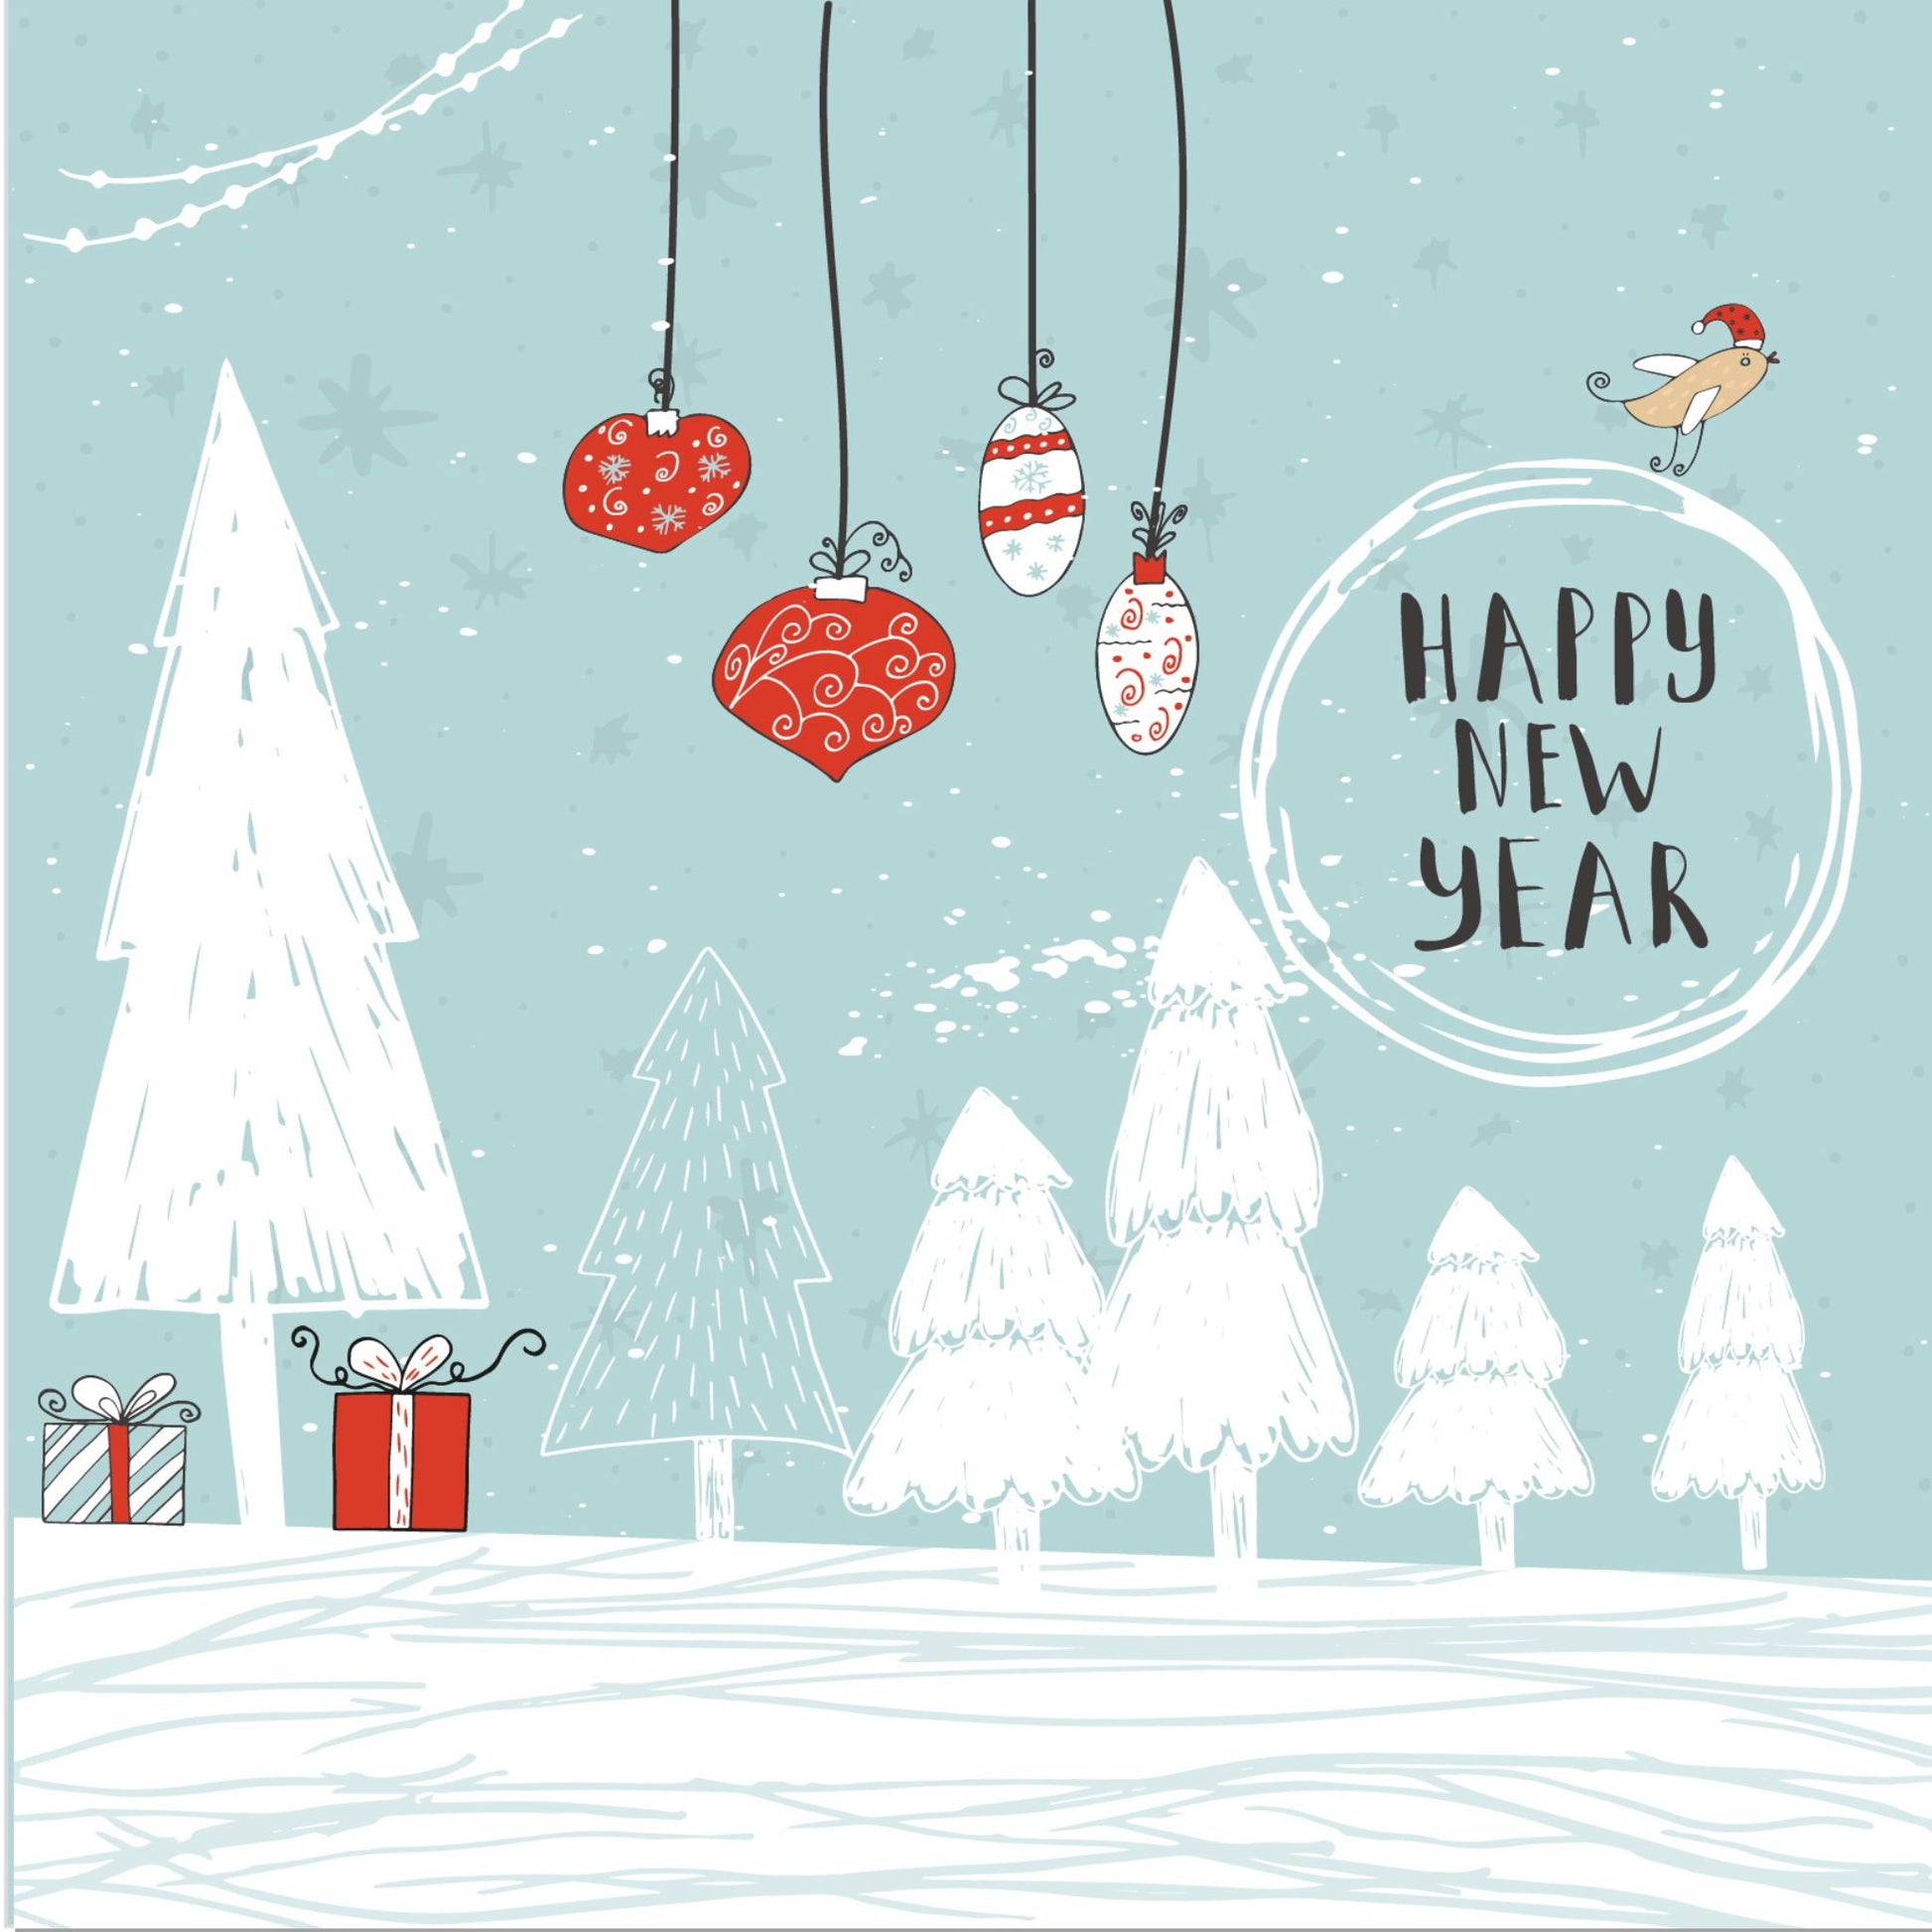 Håndtegnet cartoon julekort.  Motiv av flere trær, julepakker og julekuler. Det flyr en fugl med rød nisselue. Tekst "happy new year"